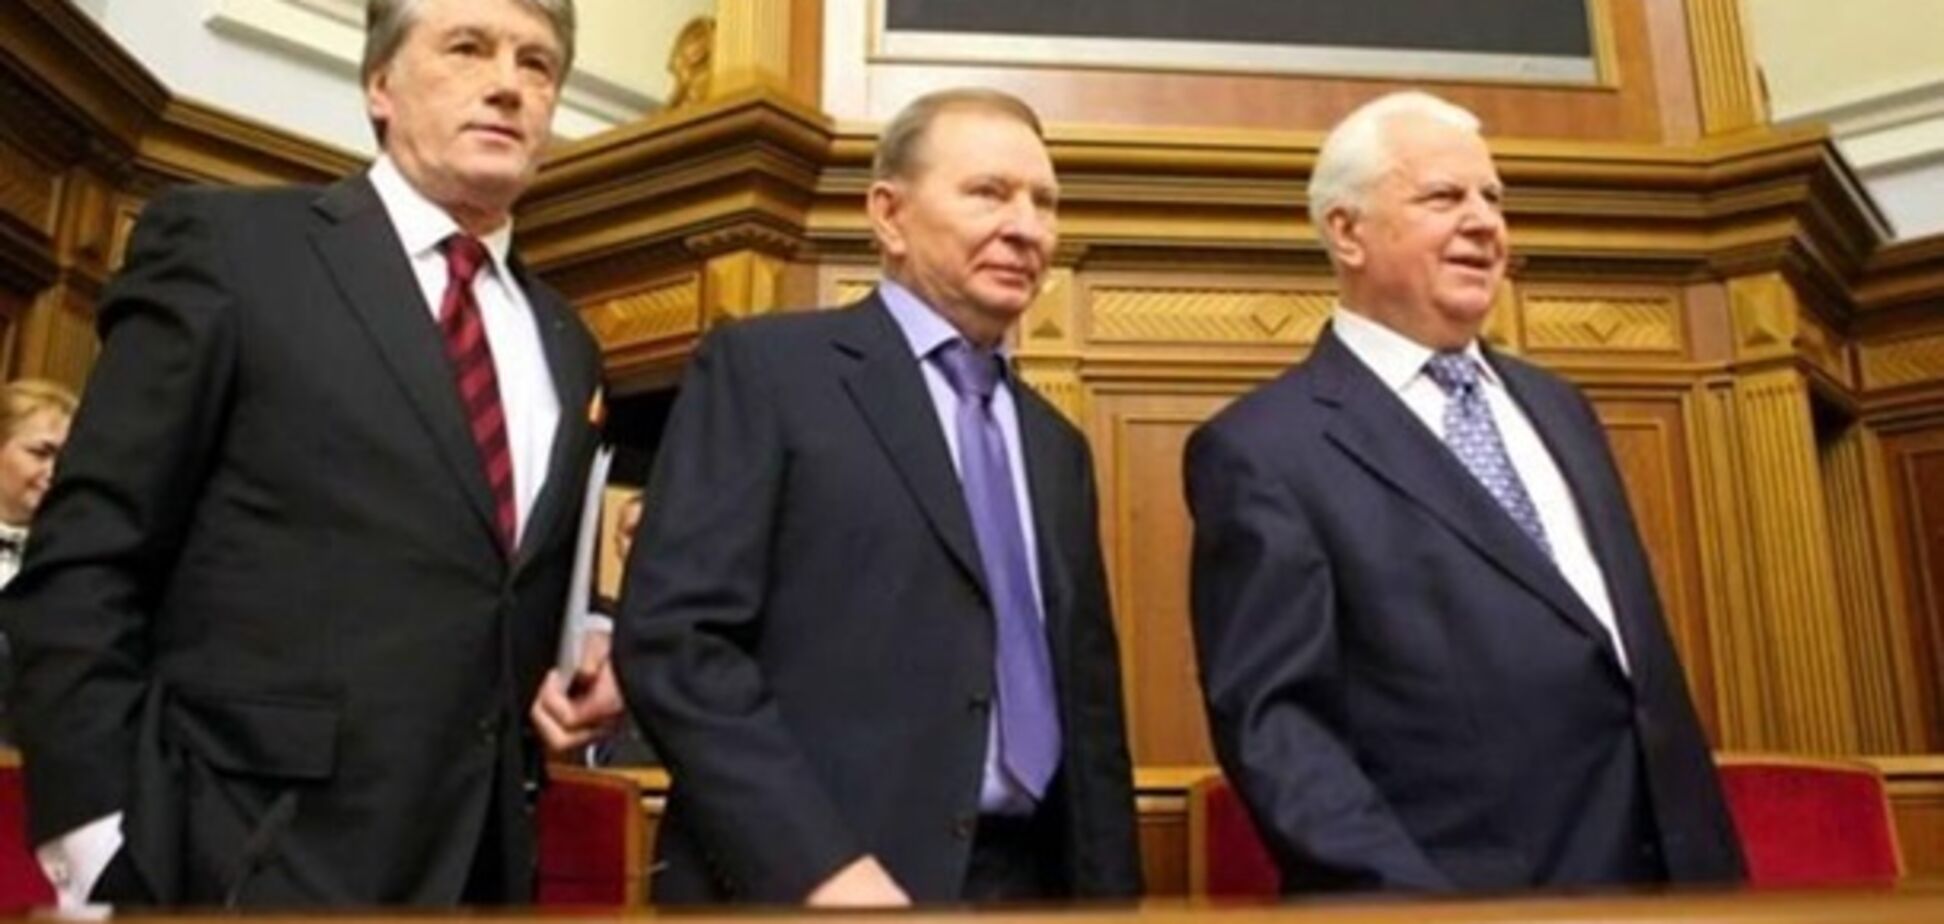  Автокефалия в Украине: Кравчук, Кучма и Ющенко подписали совместное обращение 